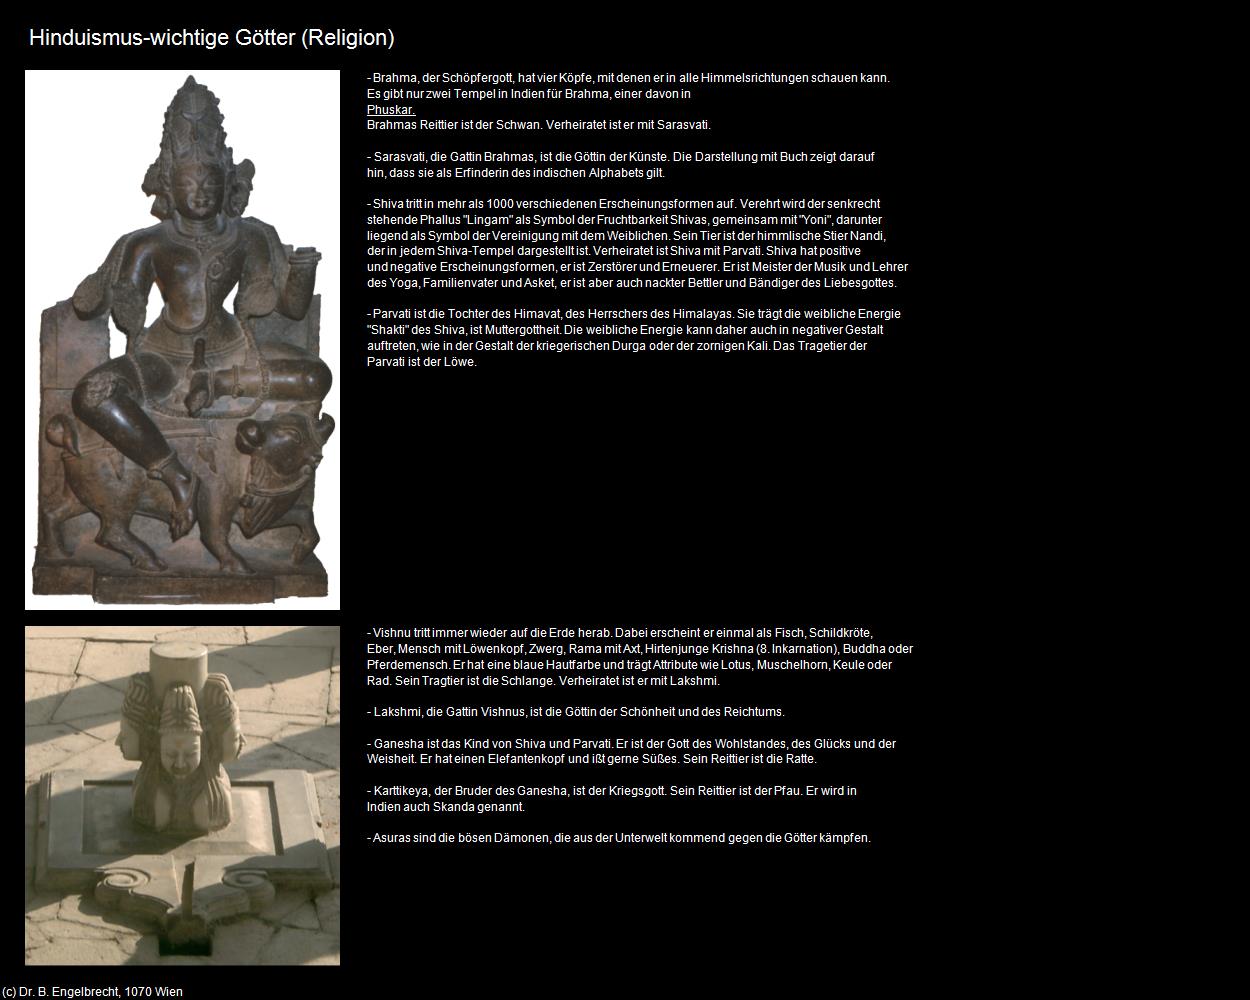 Hinduismus-wichtige Götter (Indien-Religion) in Rajasthan - das Land der Könige(c)B.Engelbrecht